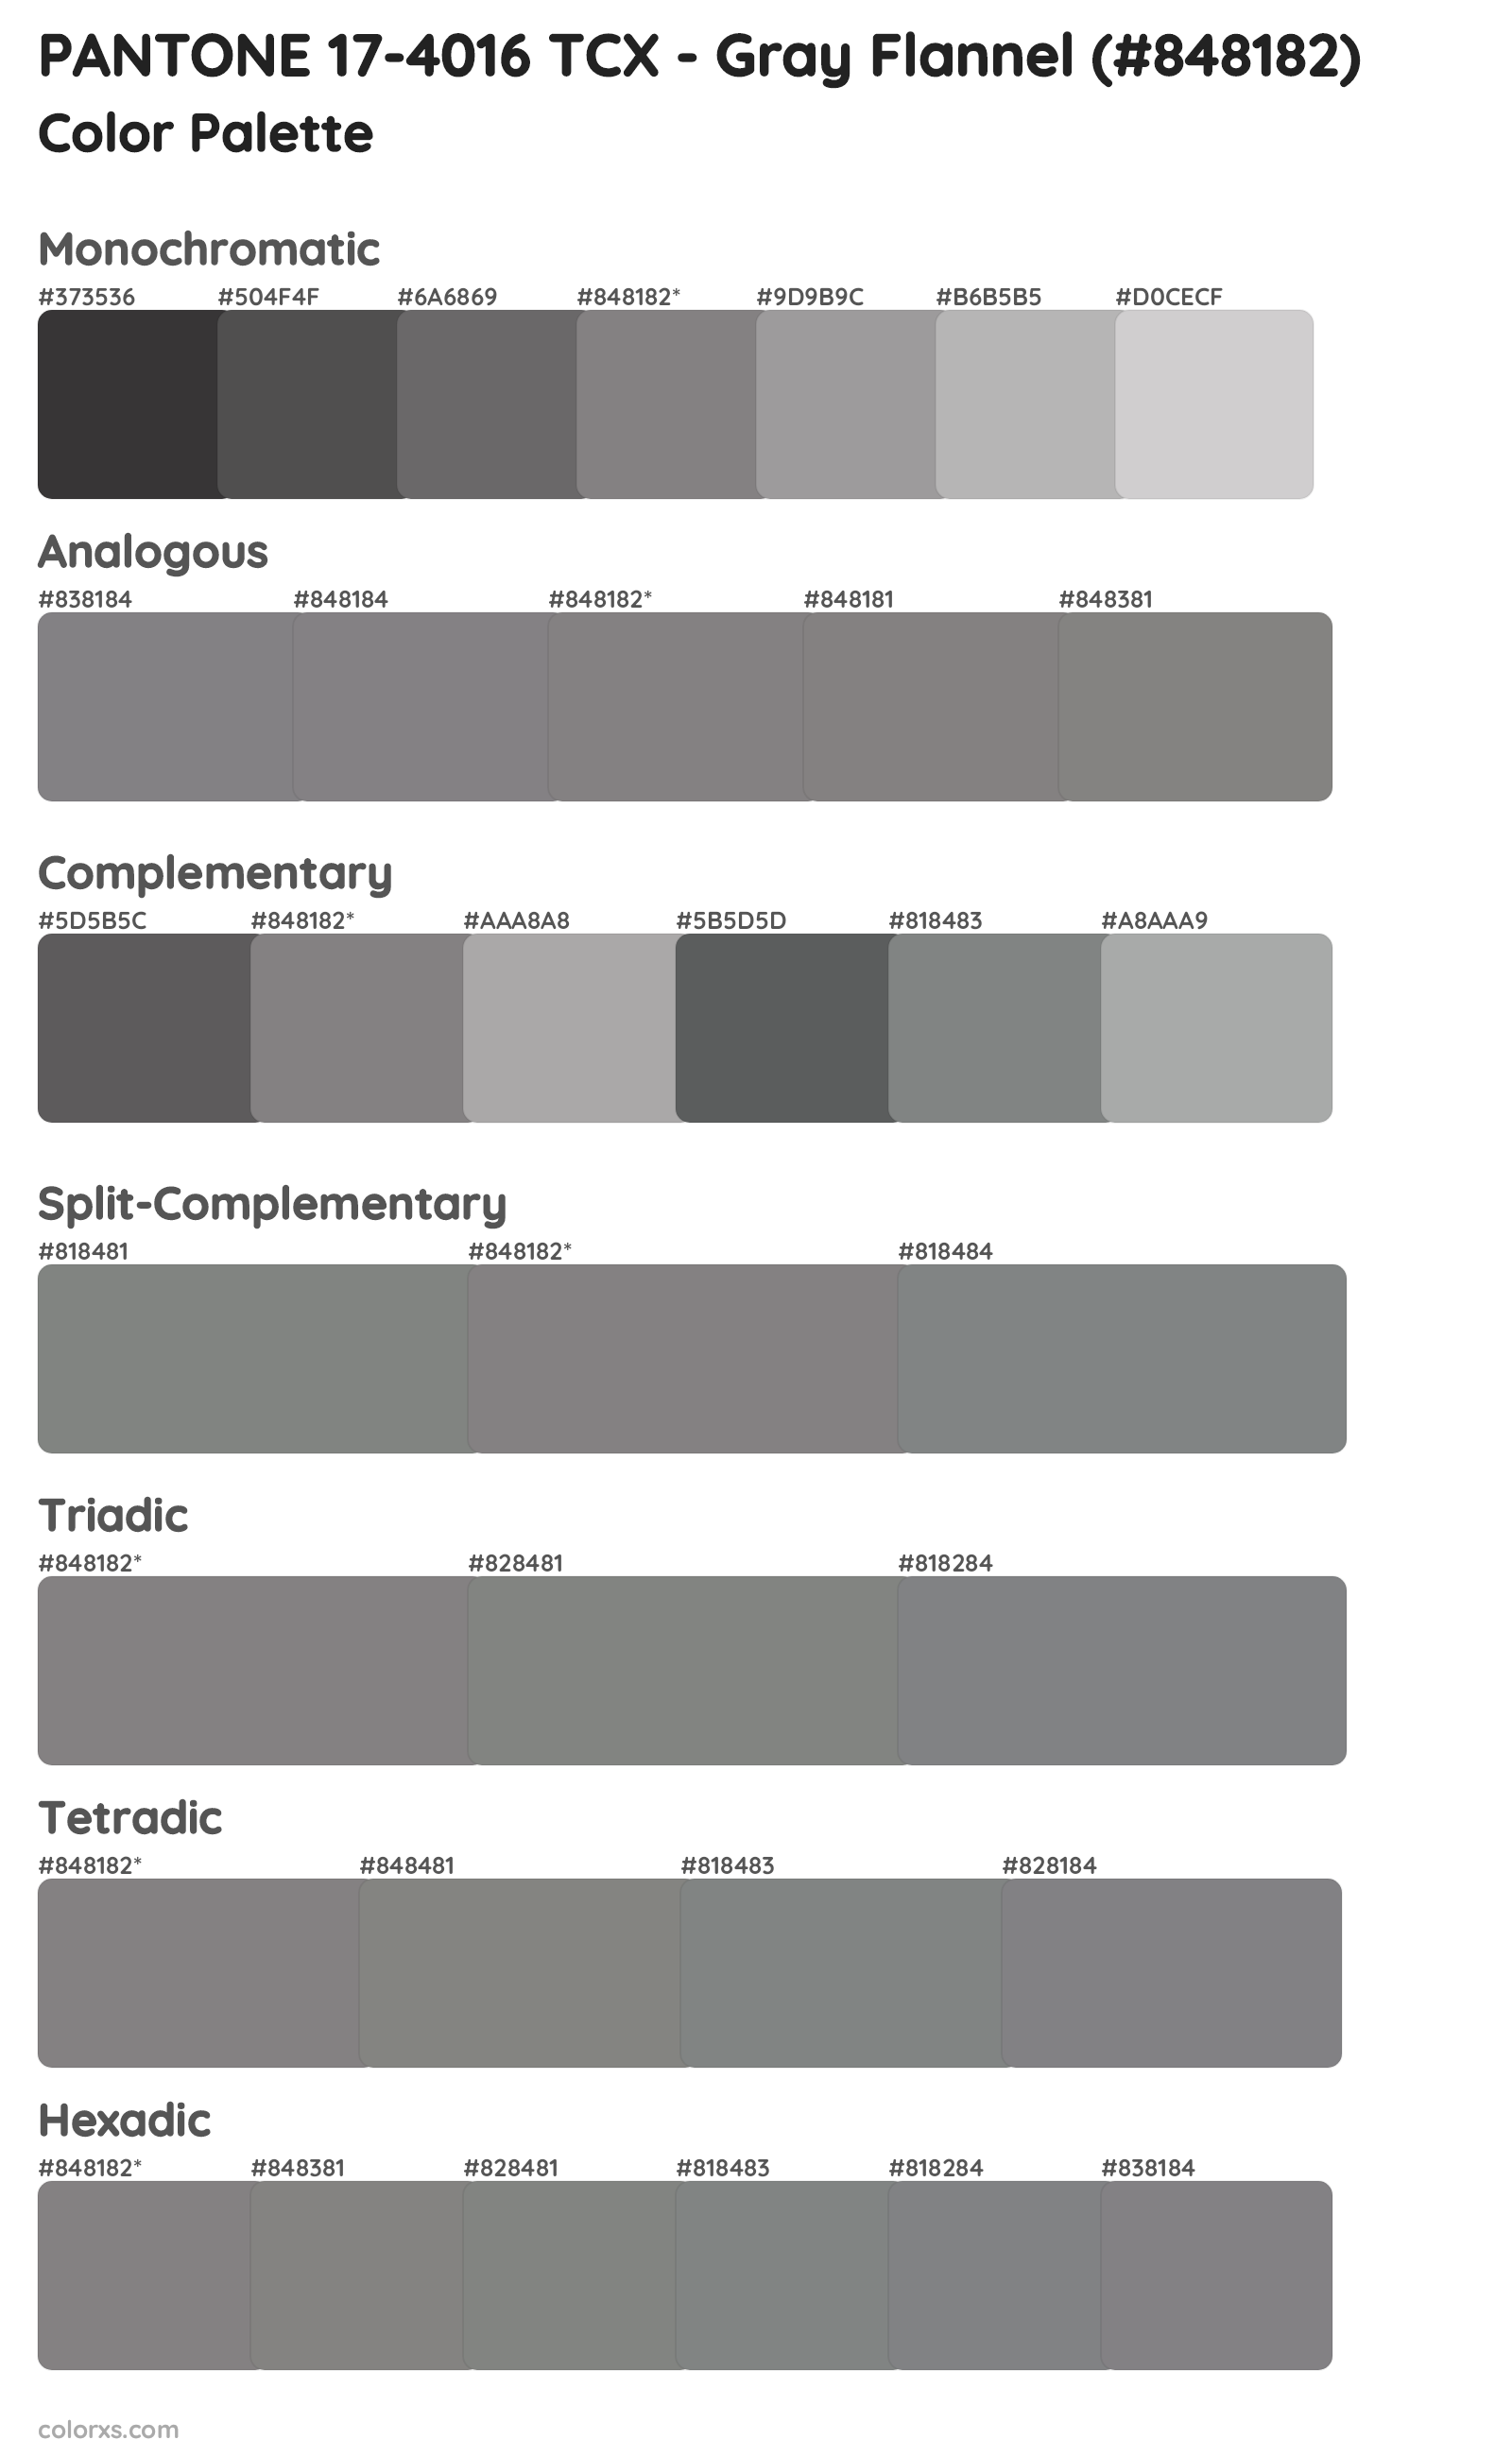 PANTONE 17-4016 TCX - Gray Flannel Color Scheme Palettes